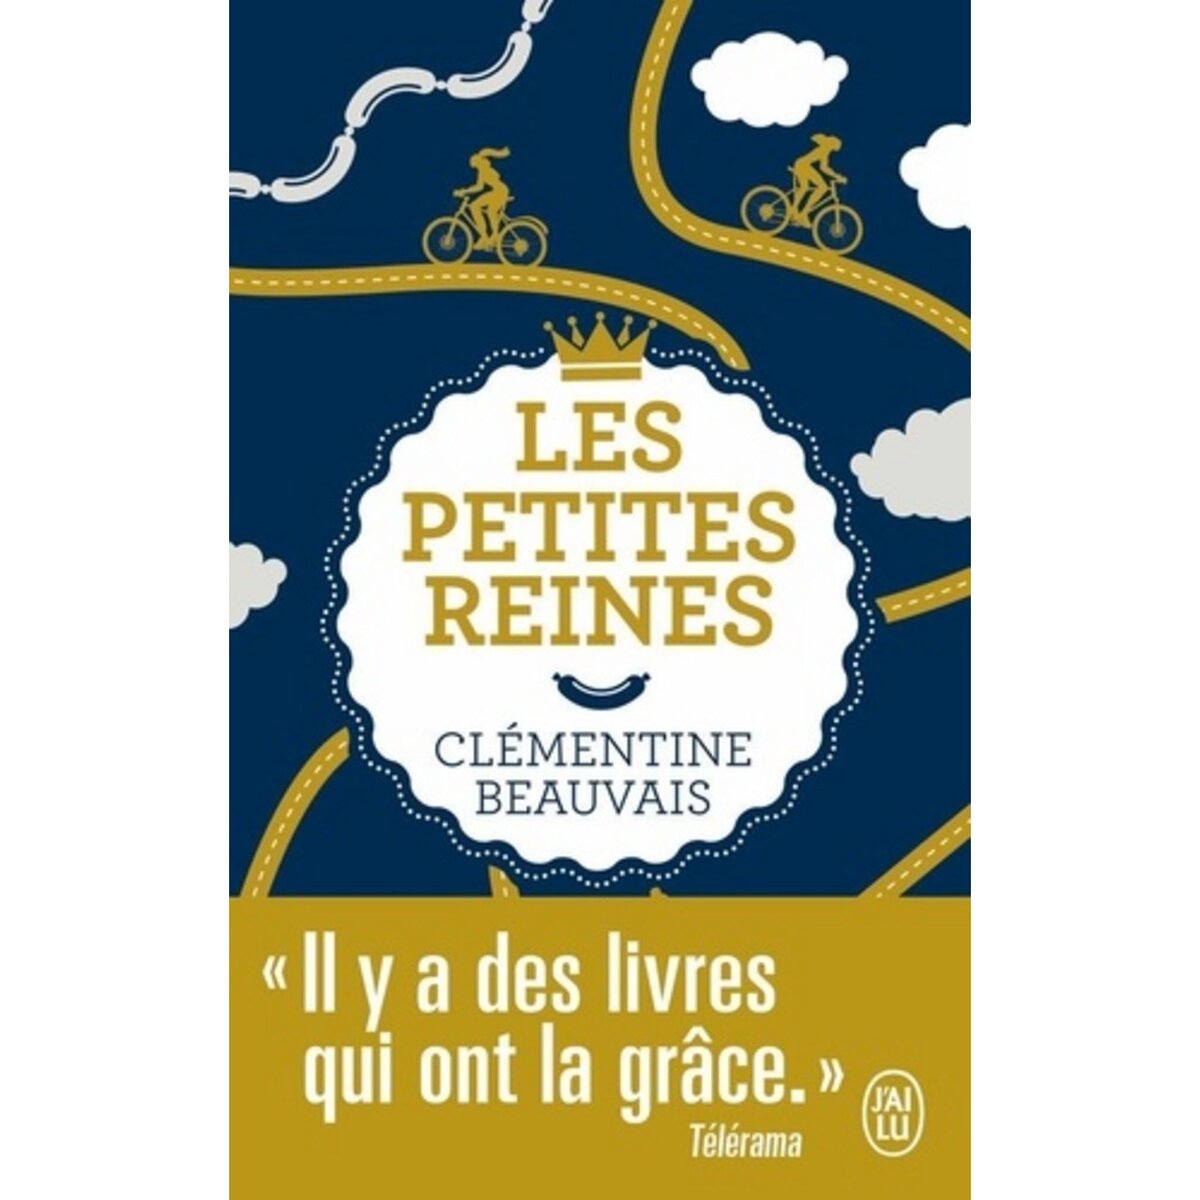  Les petites reines, Beauvais Clémentine